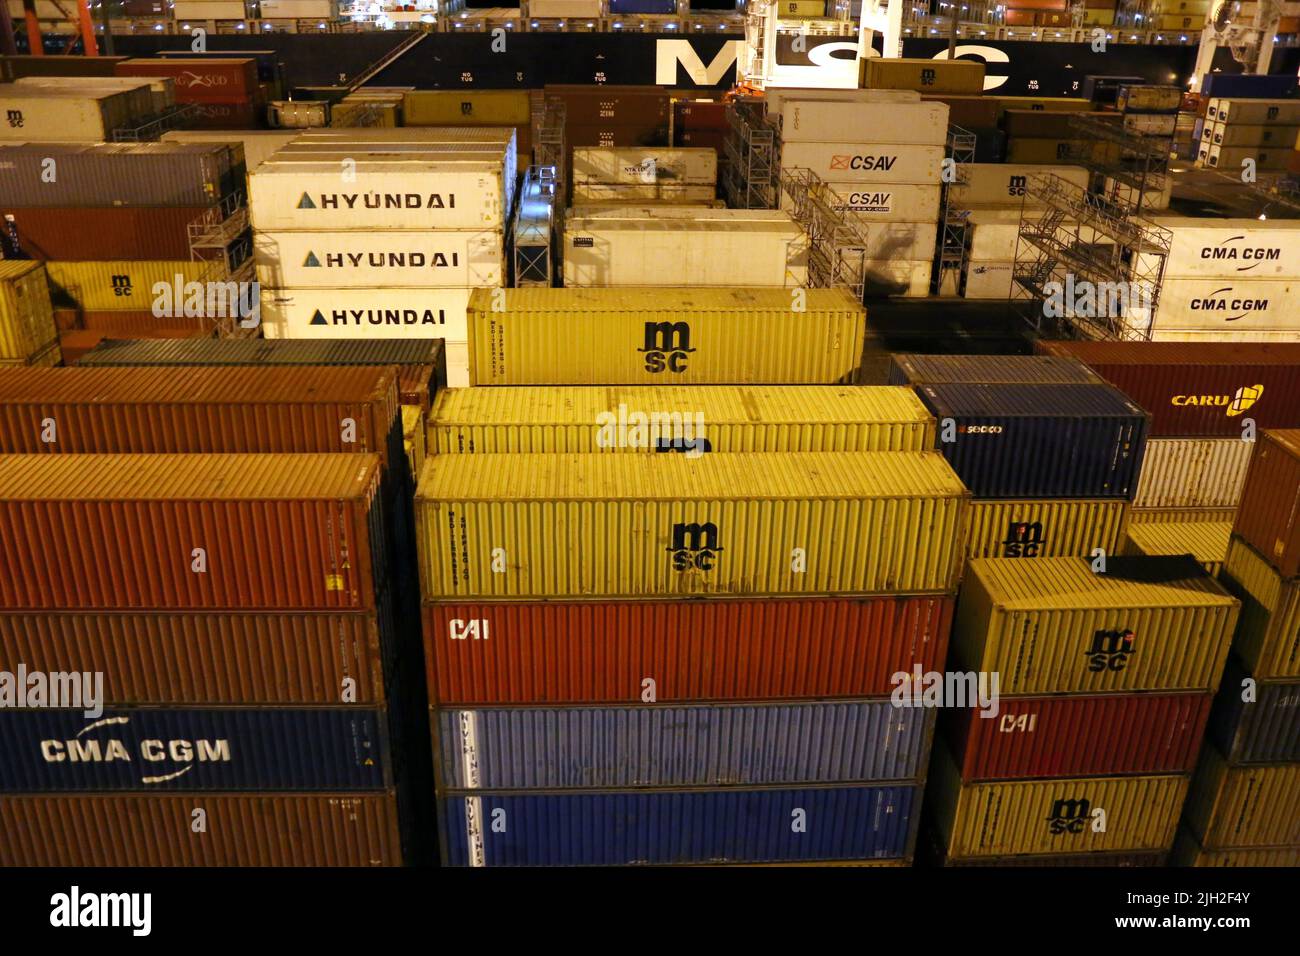 Container haben den Warenverkehr über Wasser und Land revolutioniert. Man findet sie in großen Mengen in allen Häfen der Welt. Hier Container im Hafen von Buenos Aires in Argentinien. Stock Photo